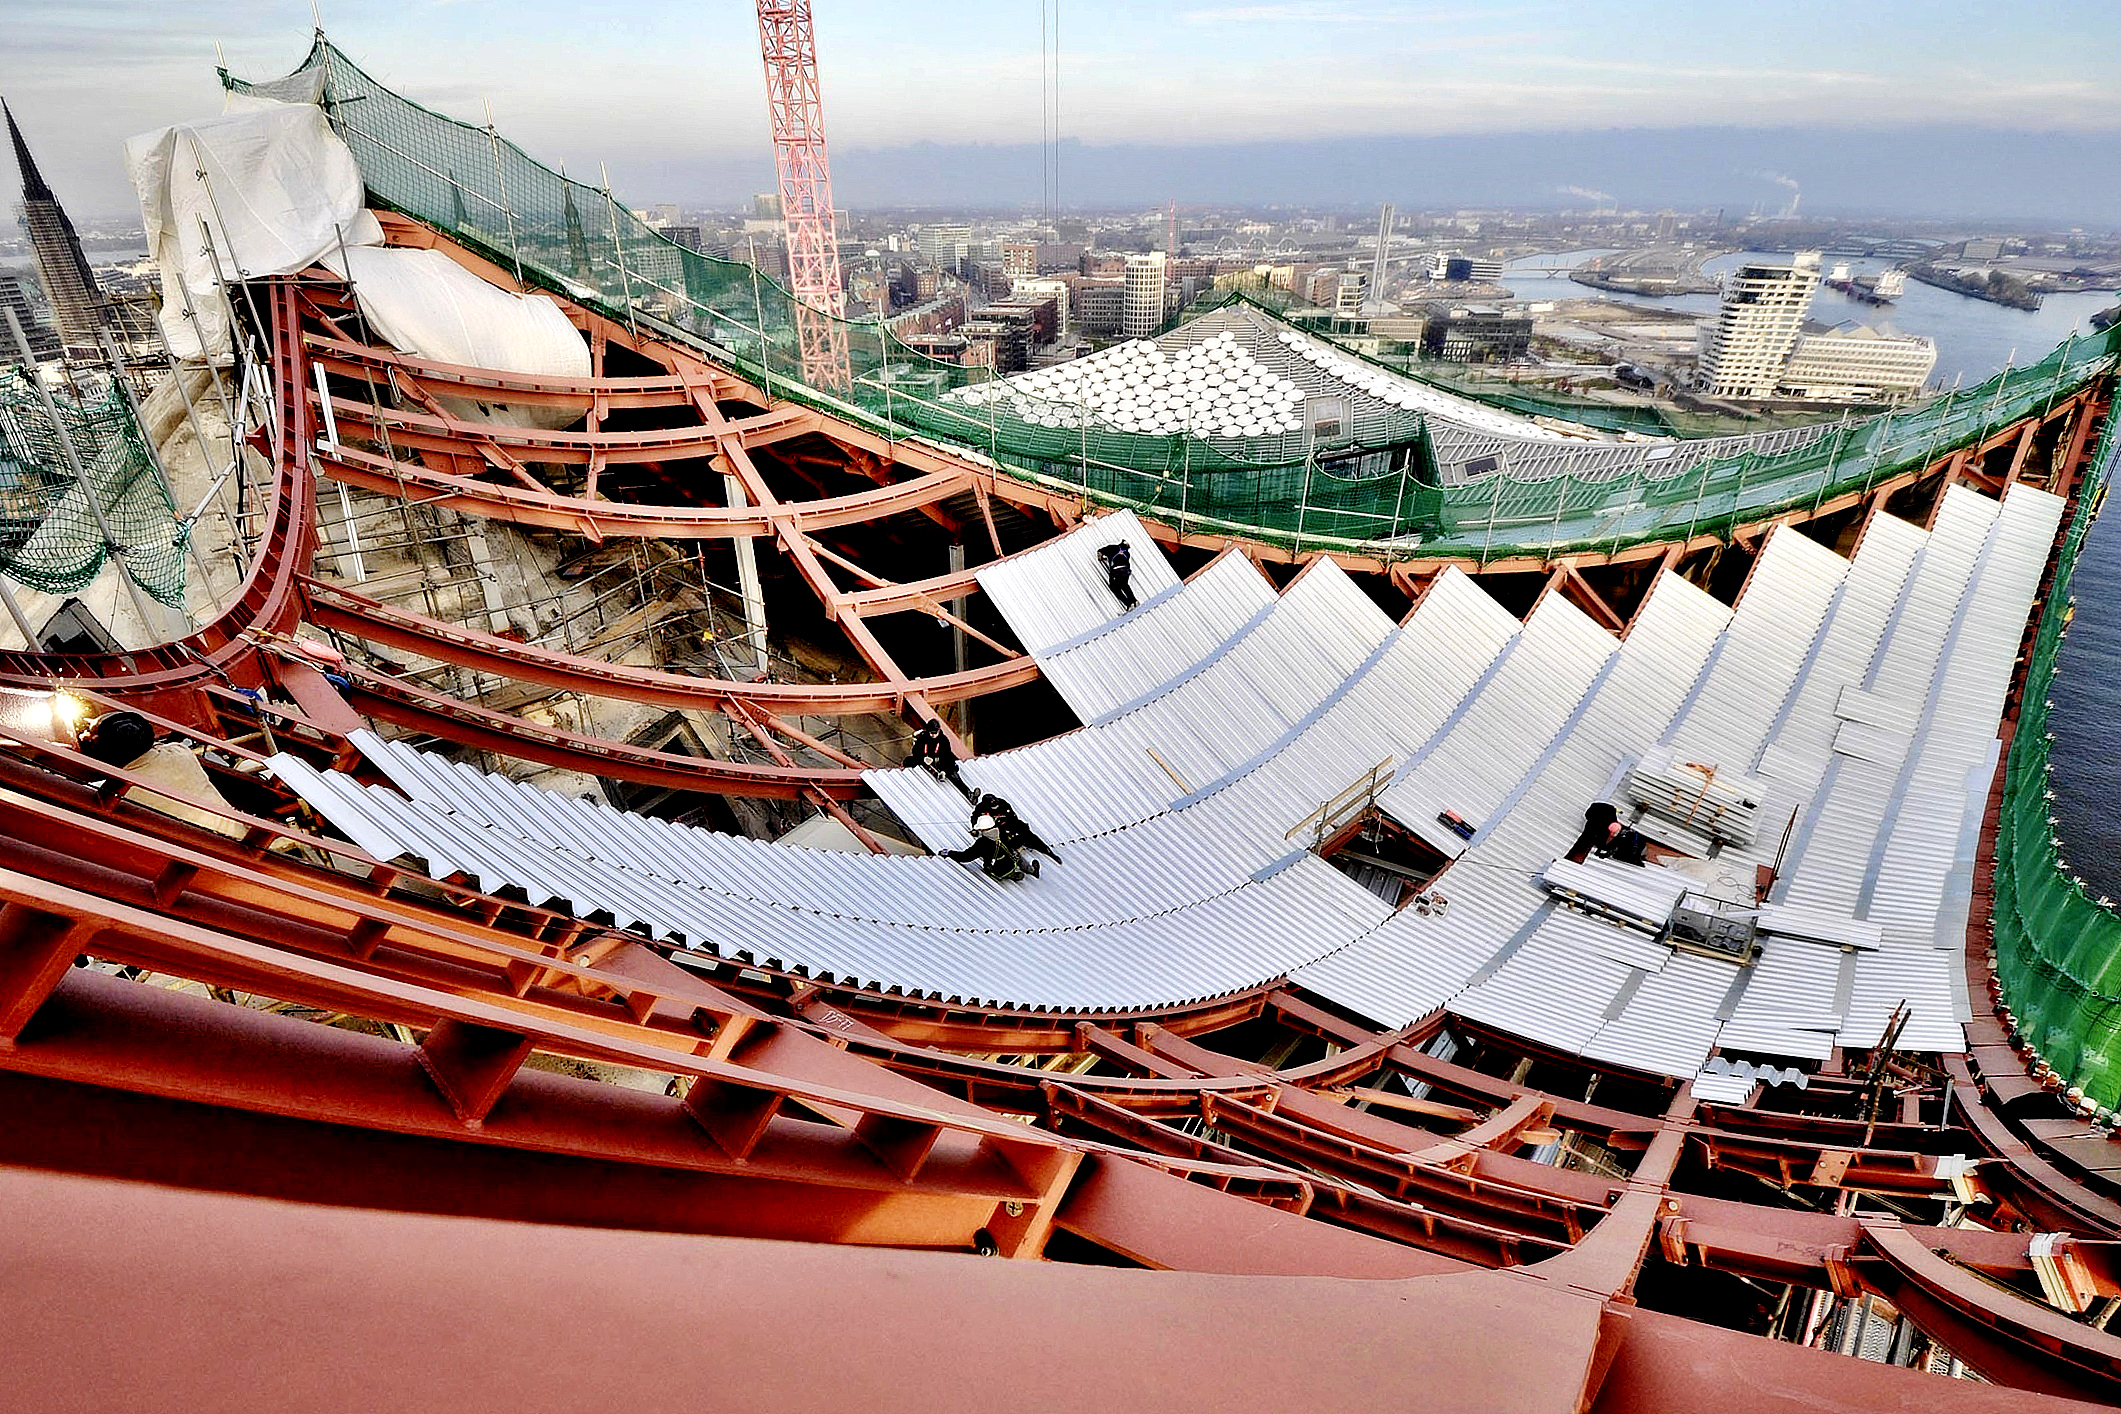 Obr. 47 Pokládka trapézových plechů na zvlněné ocelové rošty střechy Elbphilharmonie